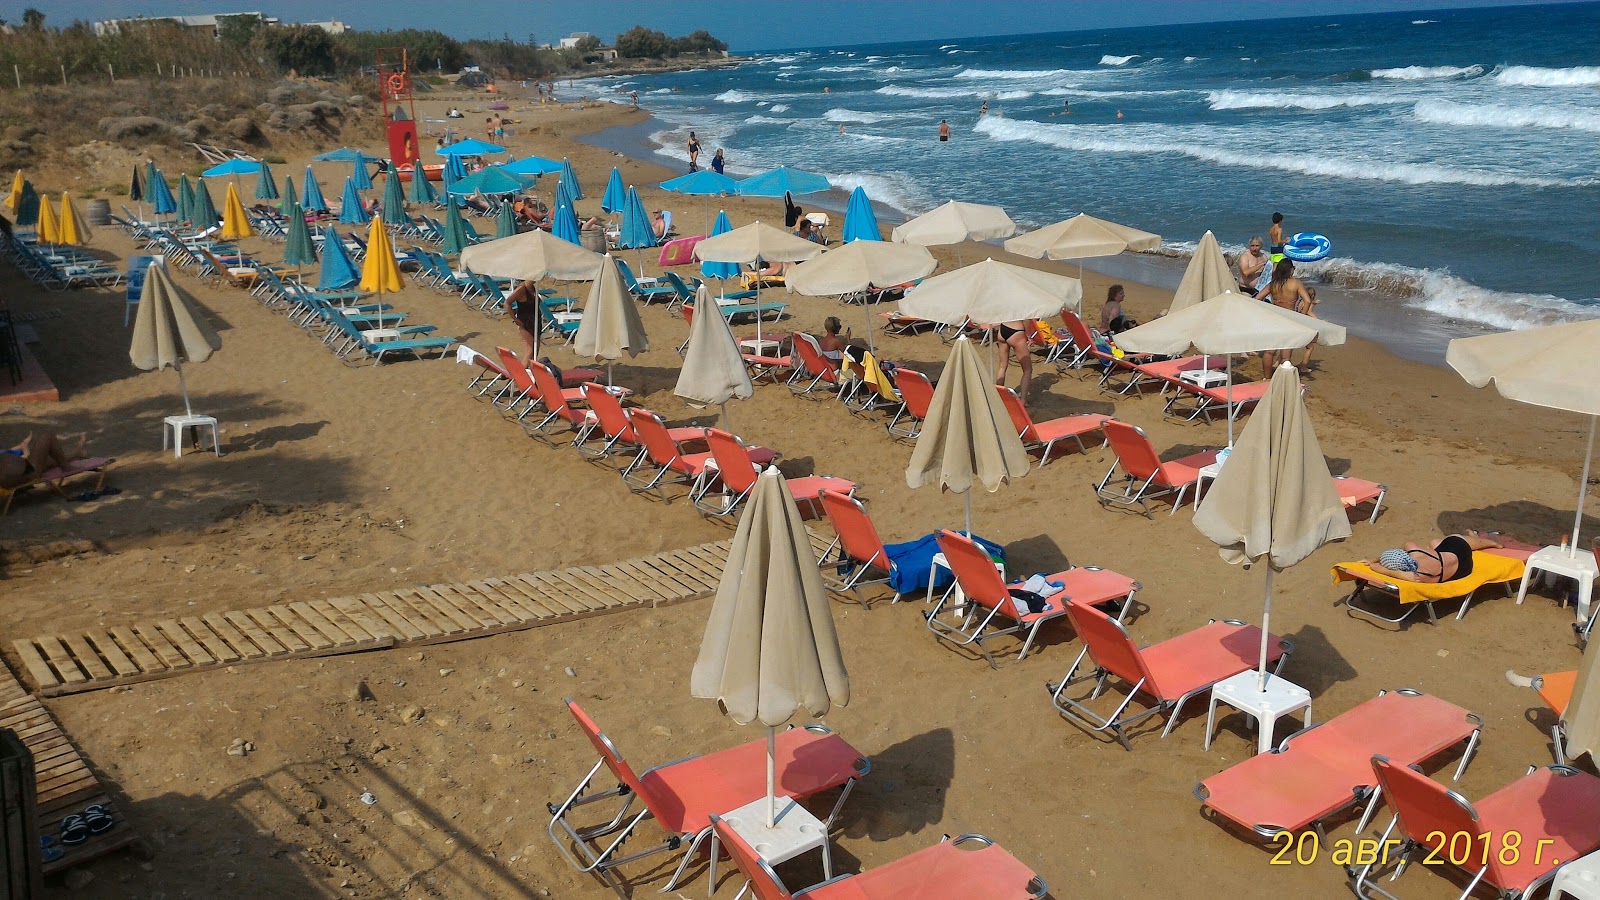 Fotografija Sfakaki beach priljubljeno mesto med poznavalci sprostitve